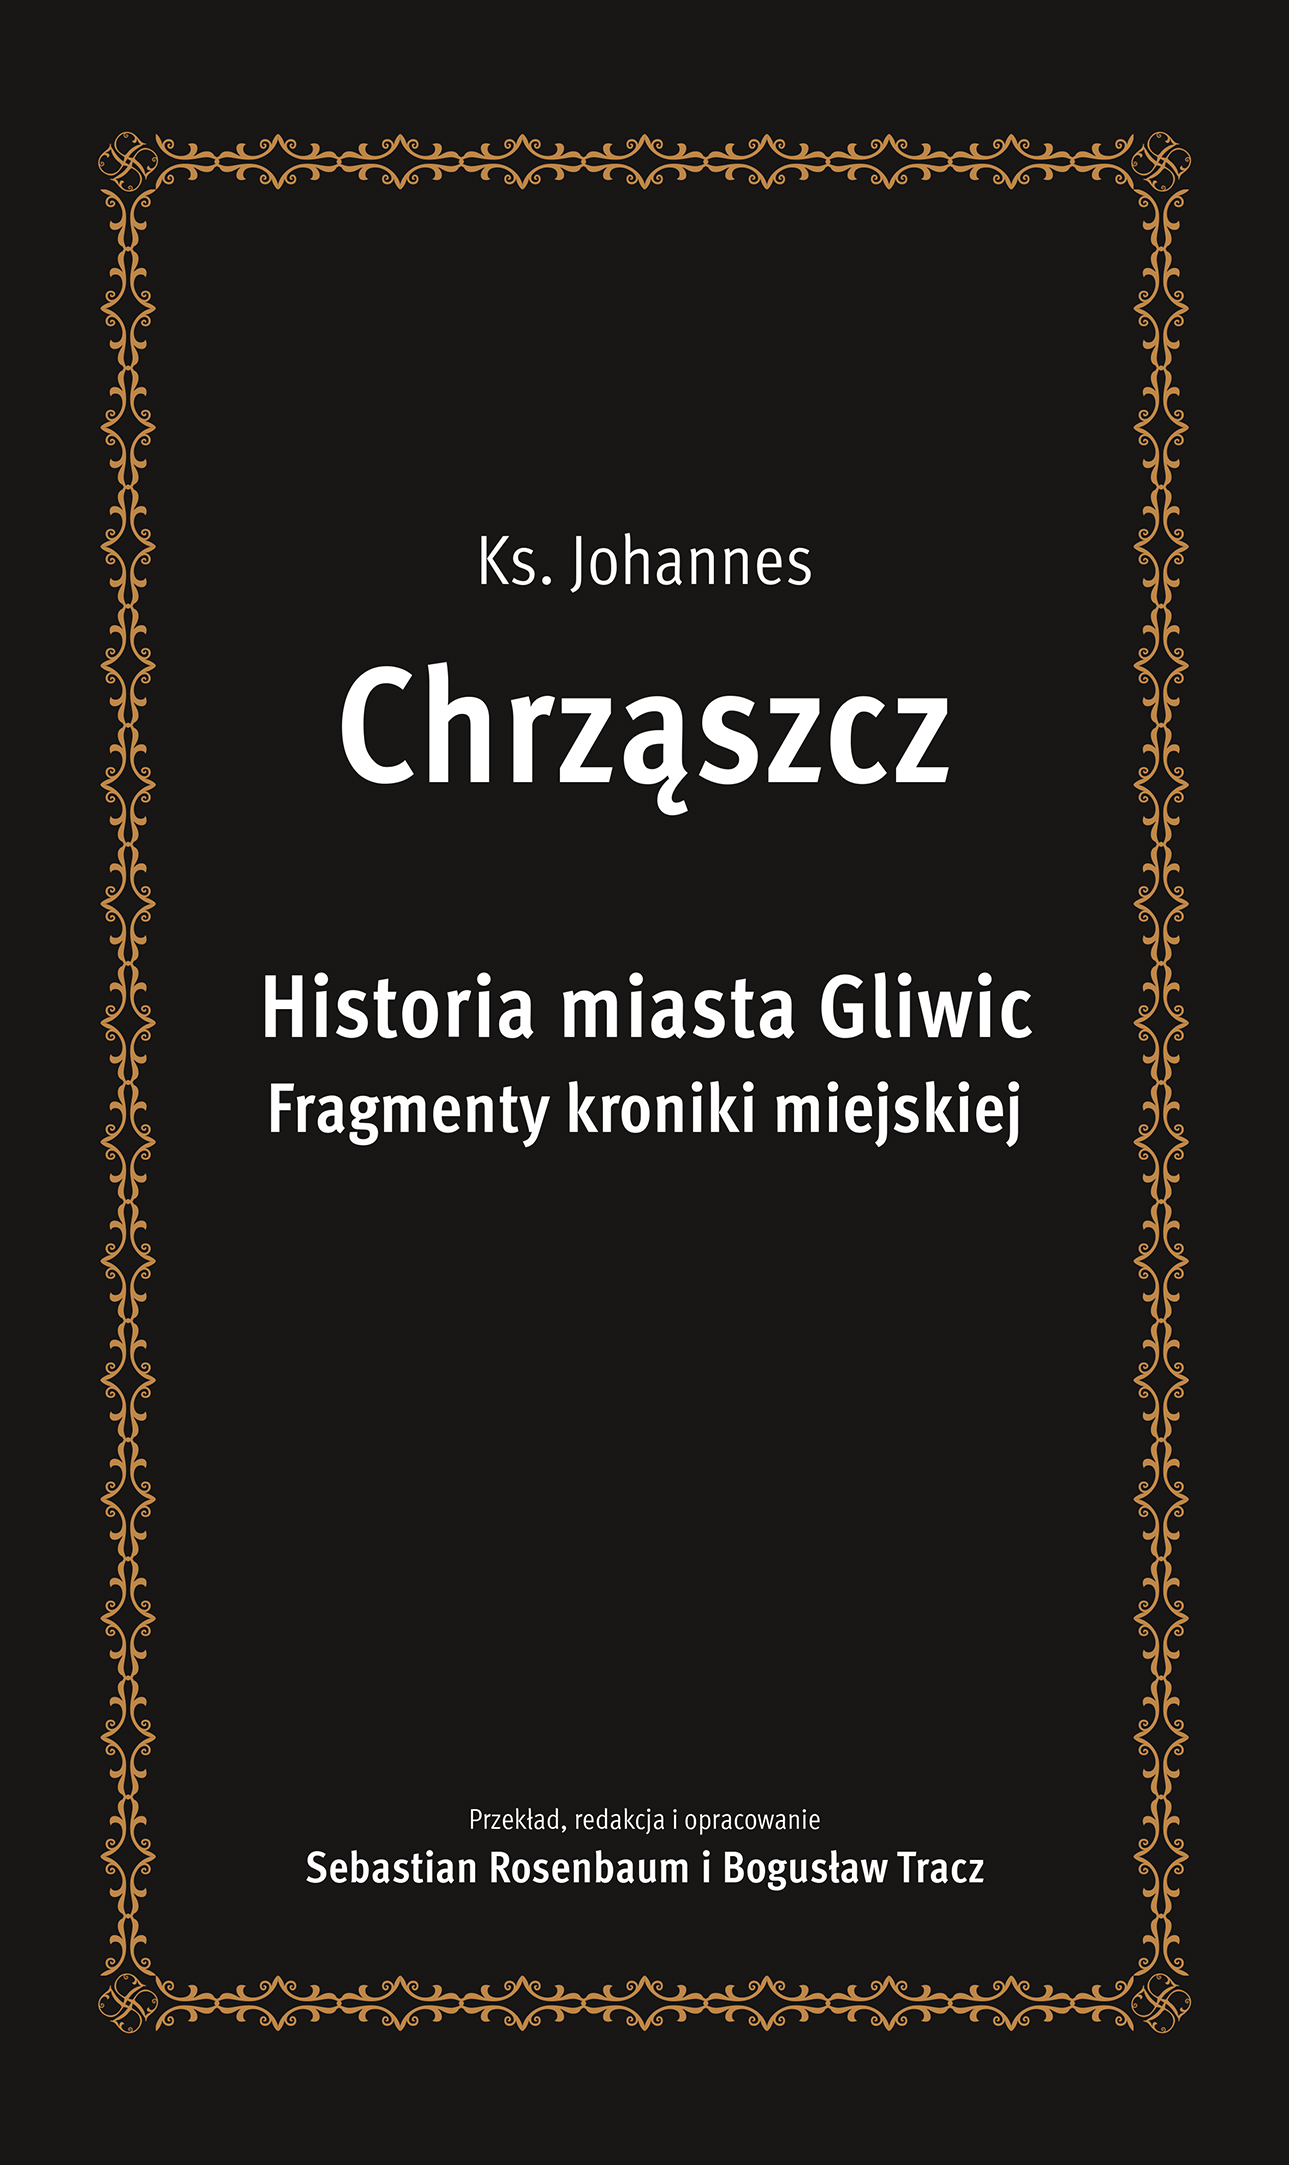 Okładka książki „Historia miasta Gliwic. Fragmenty kroniki miejskiej” ks. Johannesa Chrząszcza